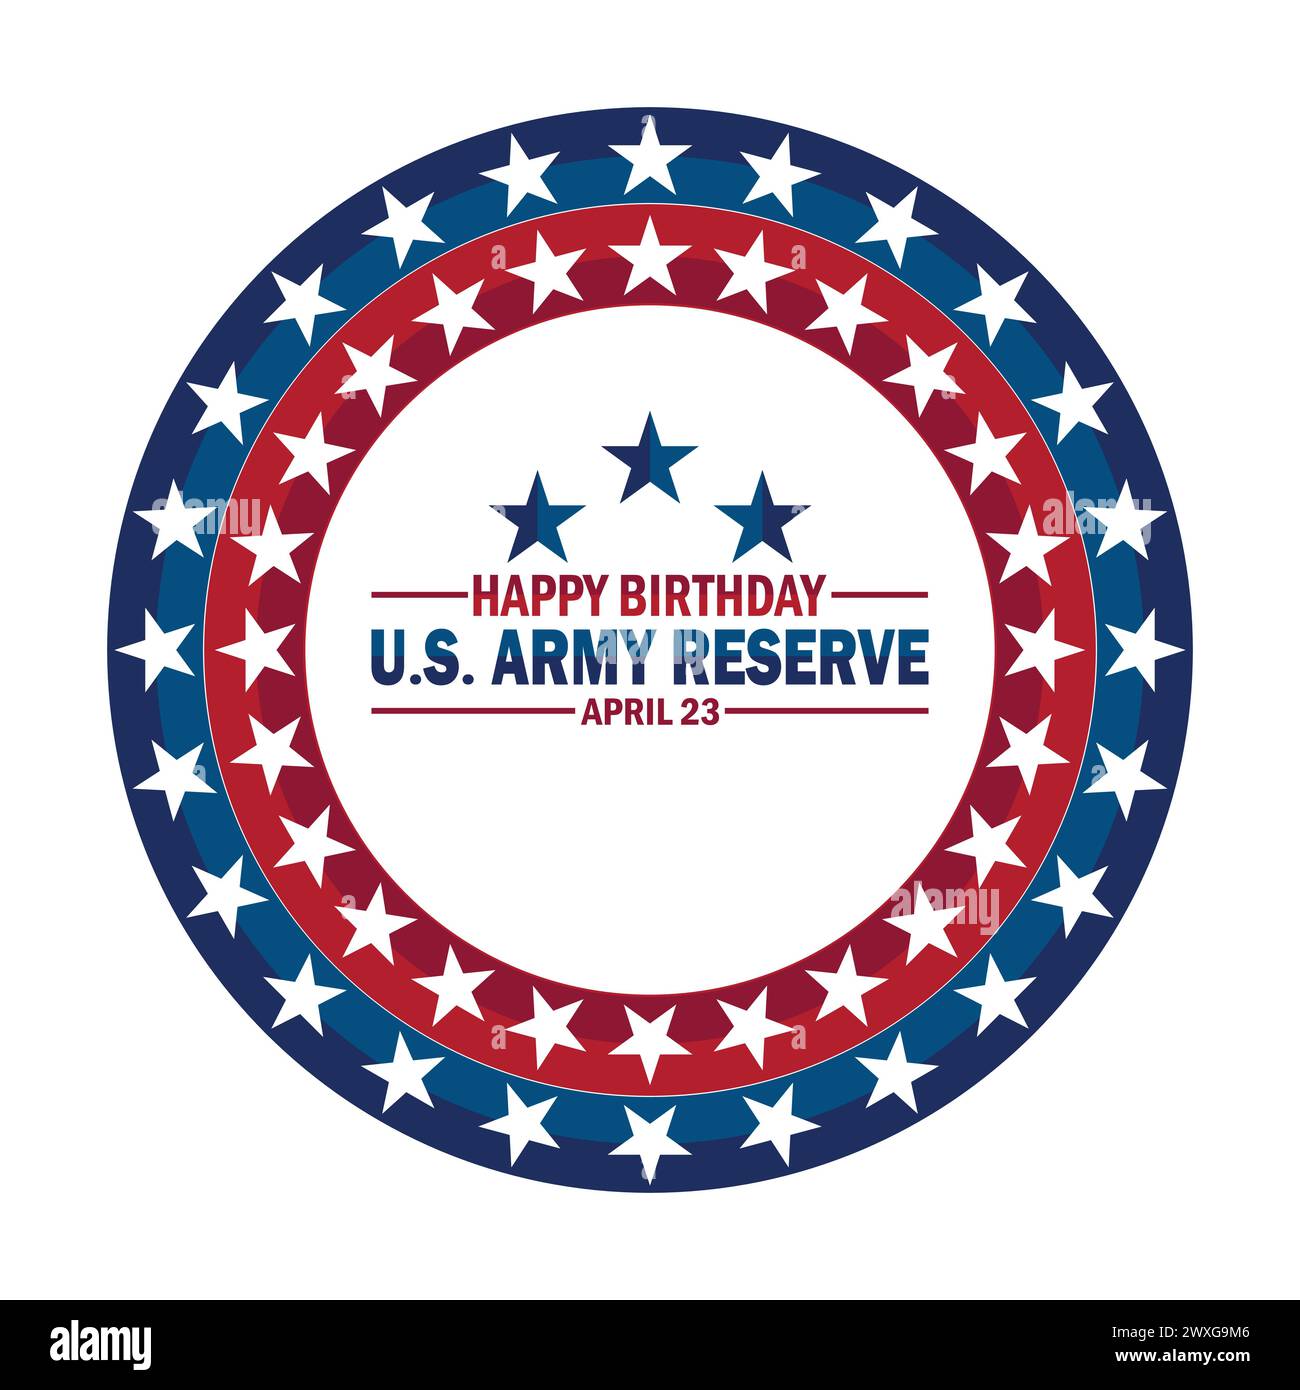 Happy Birthday US Army Reserve. Urlaubskonzept. Vorlage für Hintergrund, Banner, Karte, Poster mit Textbeschriftung Stock Vektor